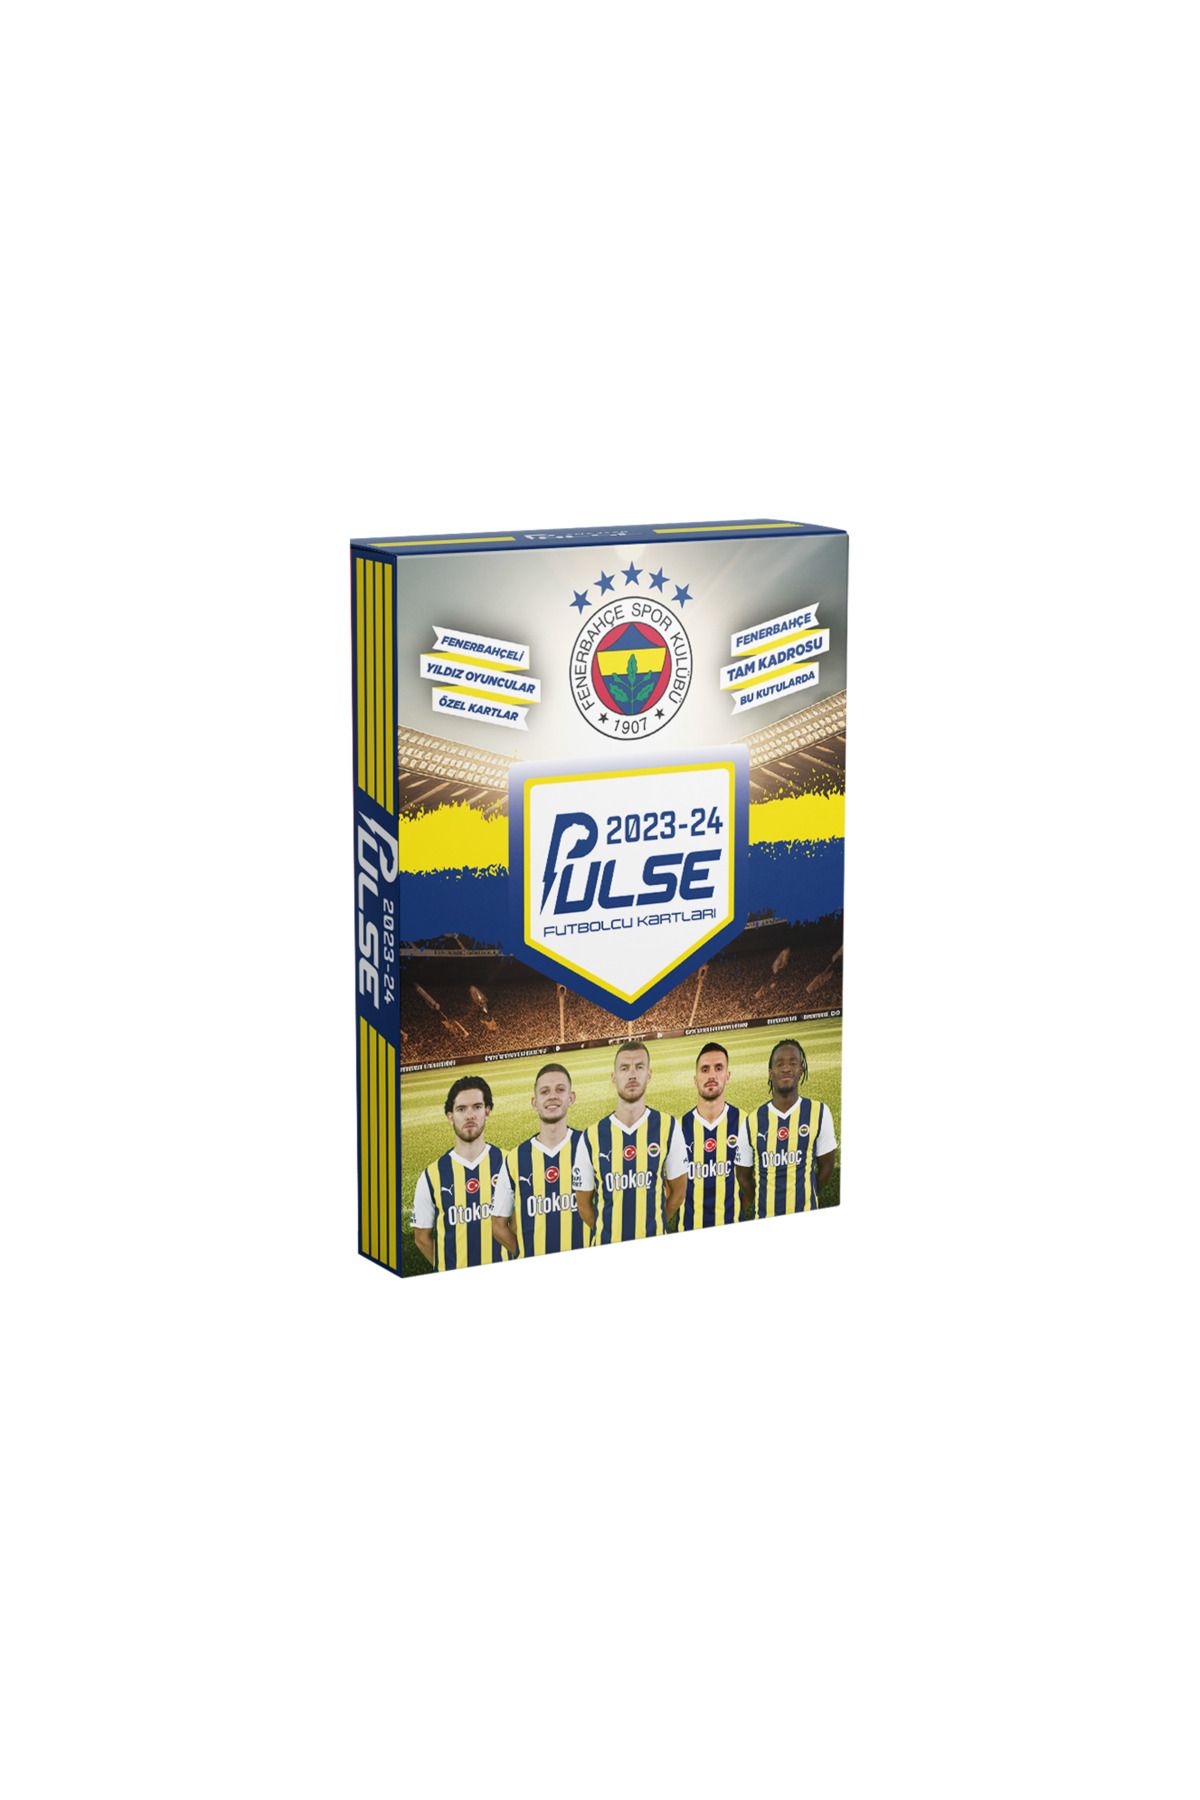 Fenerbahçe - Pulse / Futbolcu Kartları - Paket